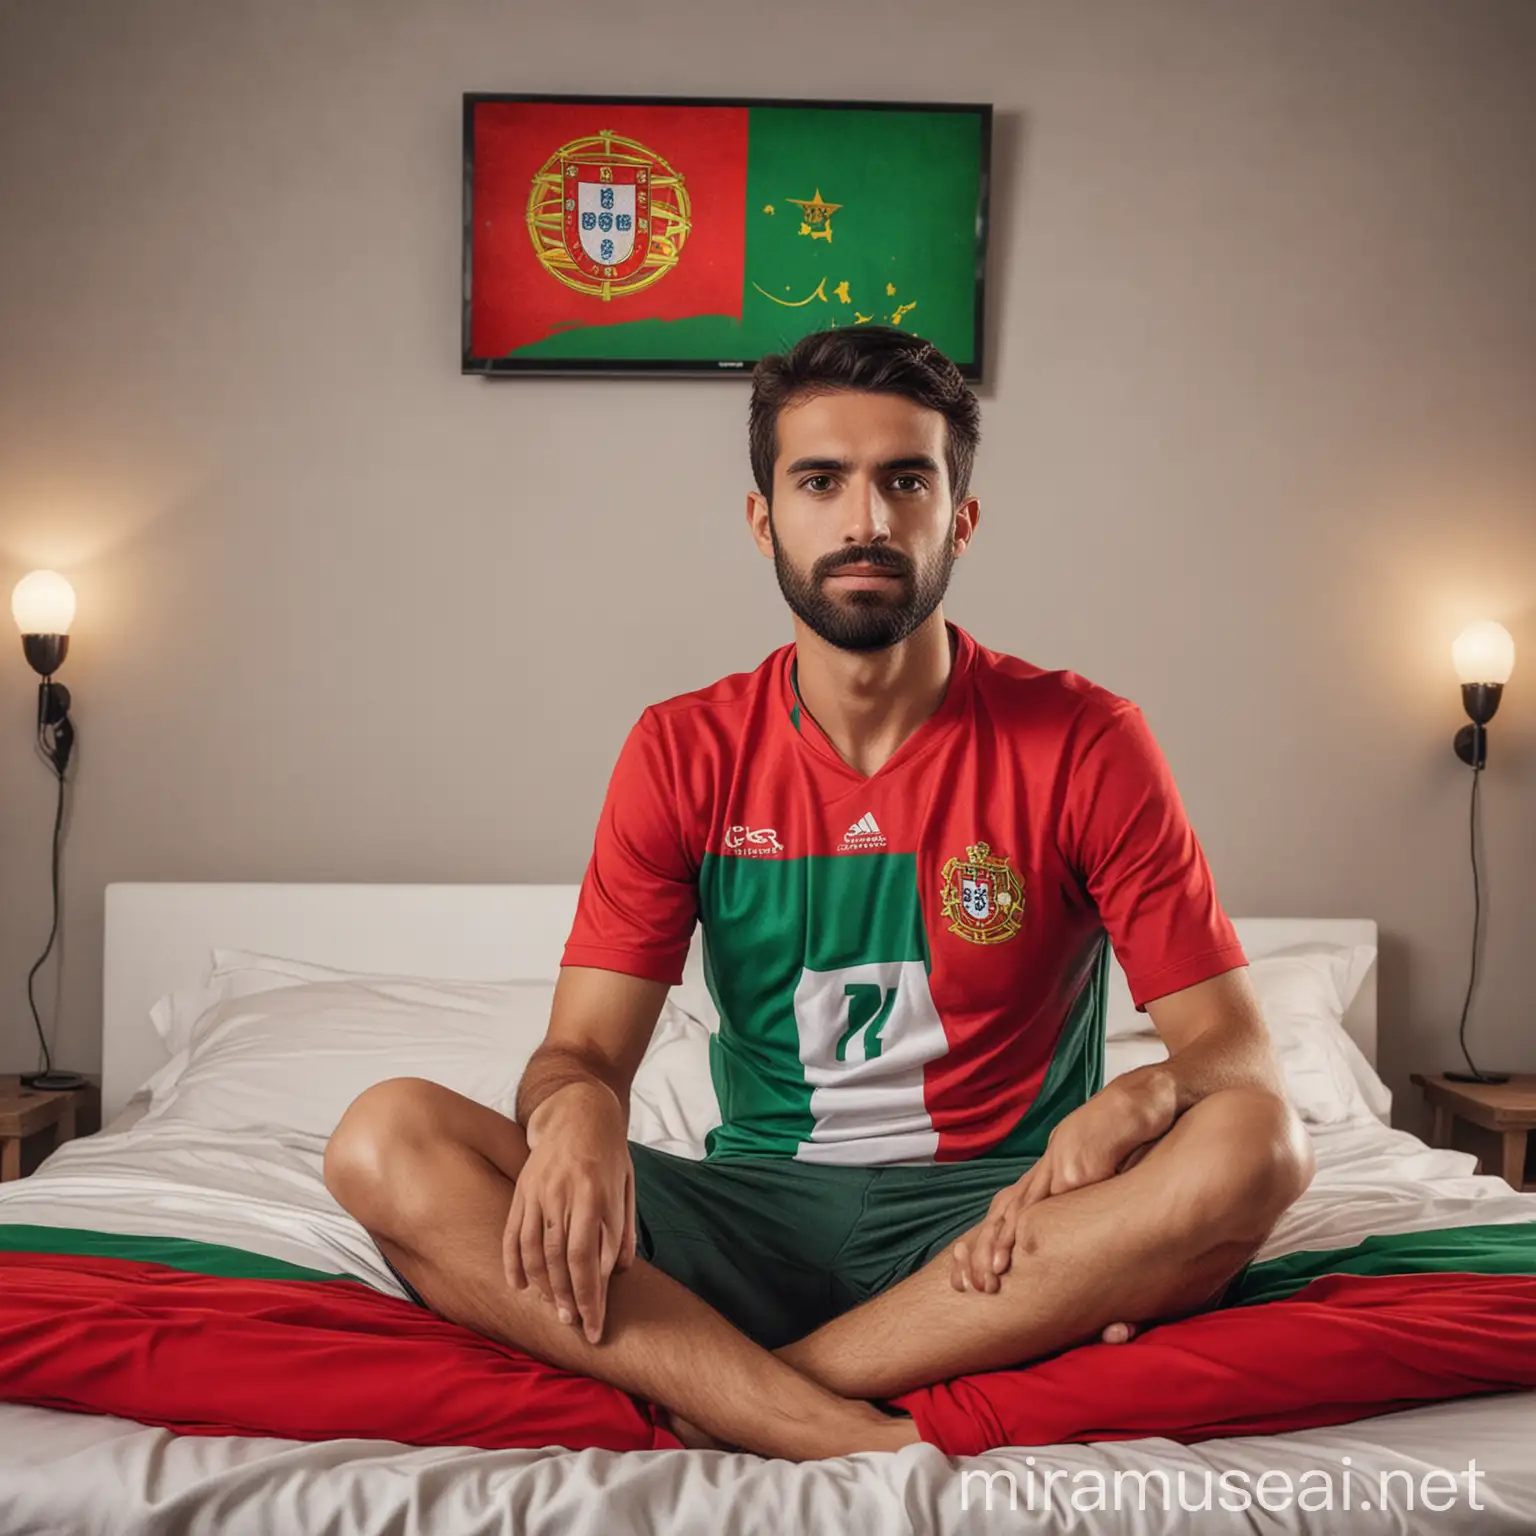 fã de futebol da seleção portuguesa, assistindo a uma partida de futebol na tv, sentado numa cama